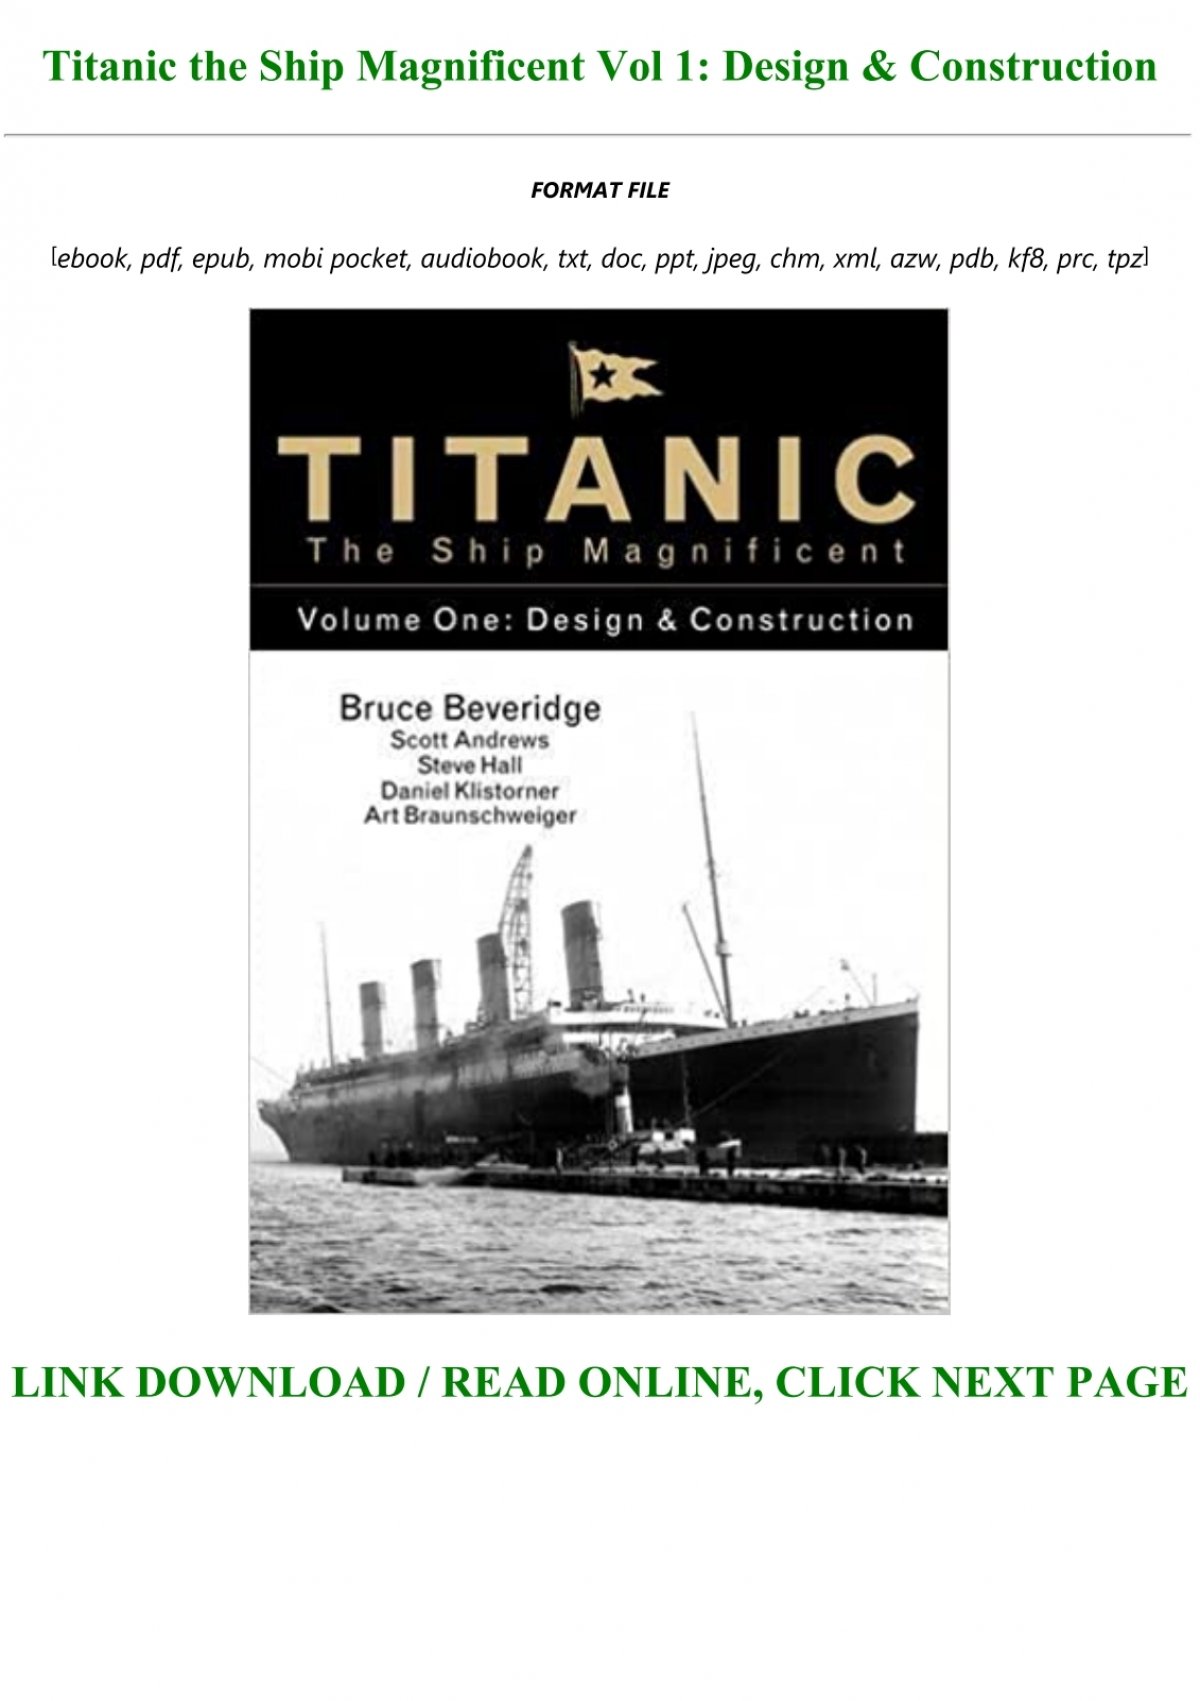 Titanic the Ship Magnific